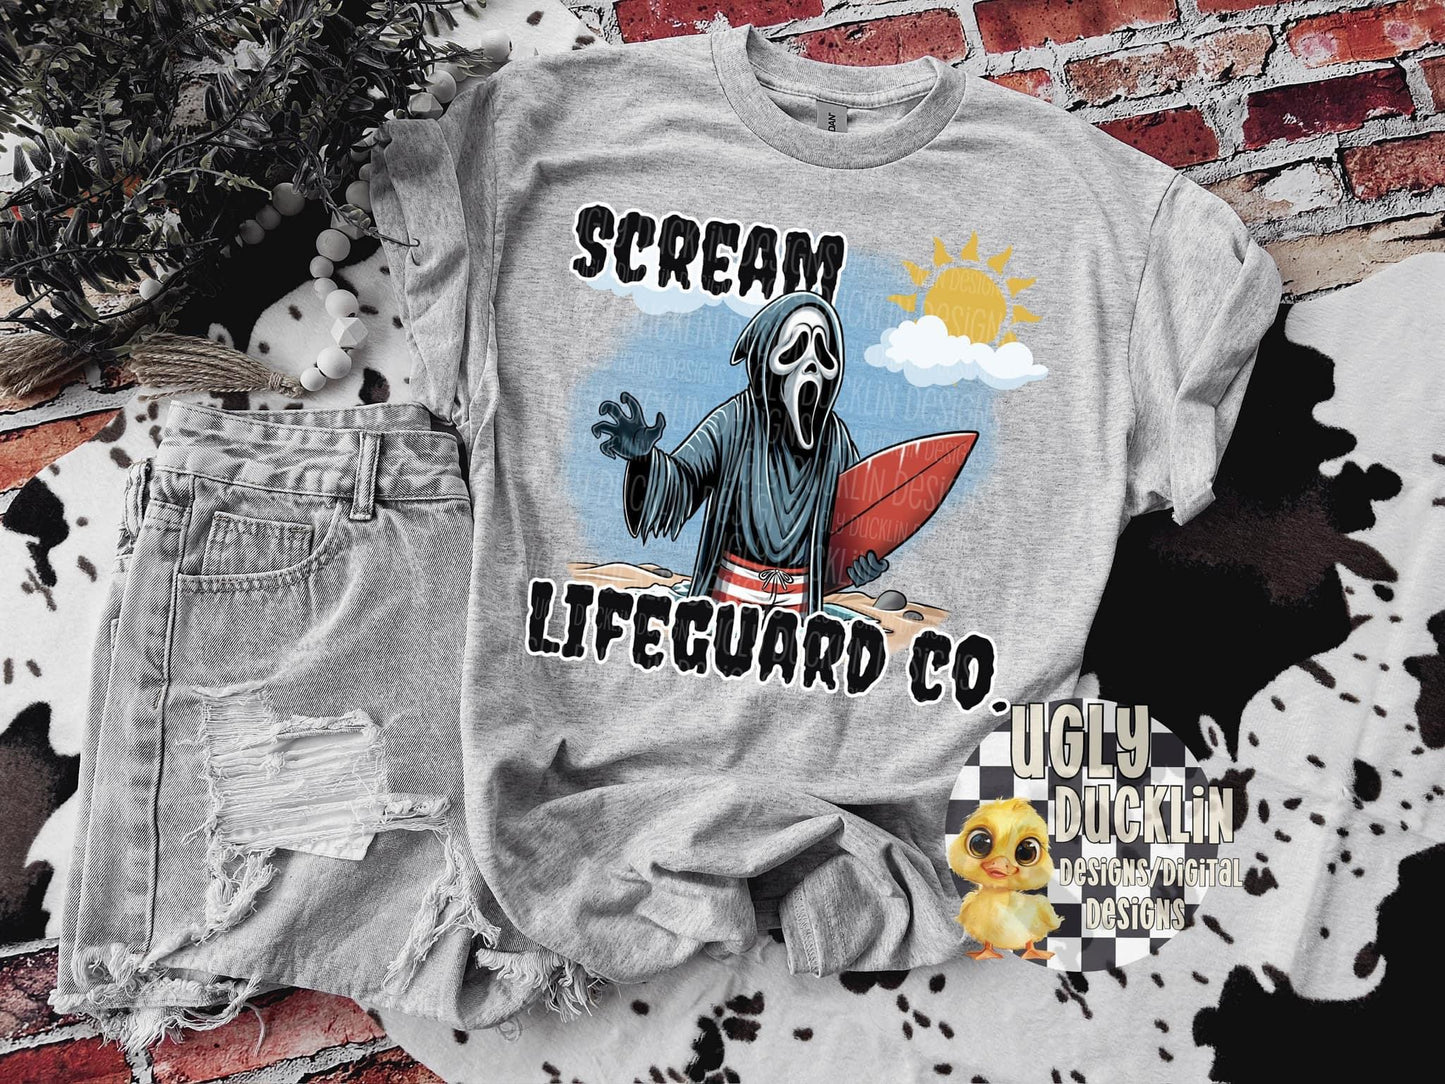 Scream Lifeguard Co (Ugly Ducklin) DTF